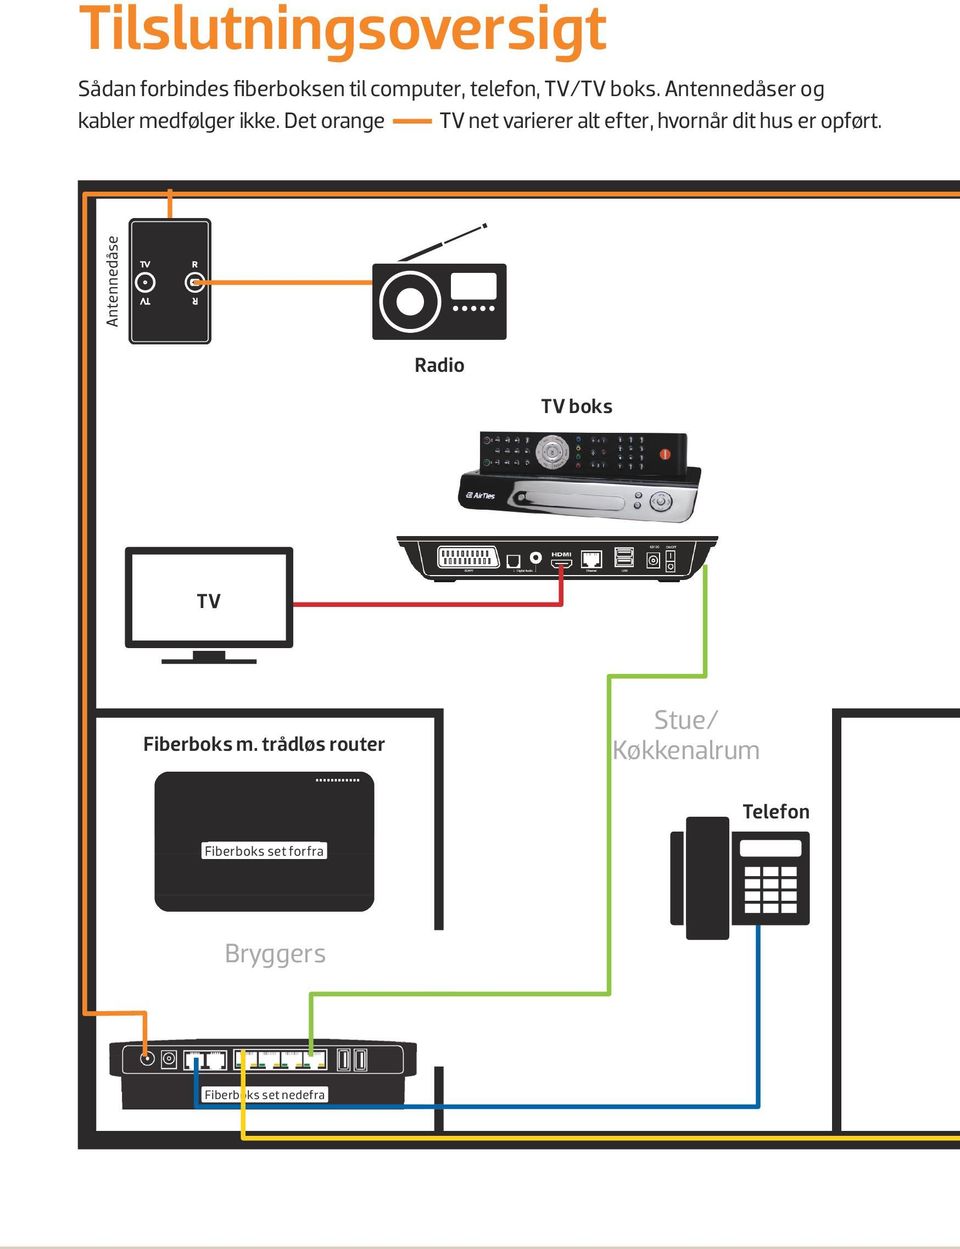 Det orange TV net varierer alt efter, hvornår dit hus er opført.